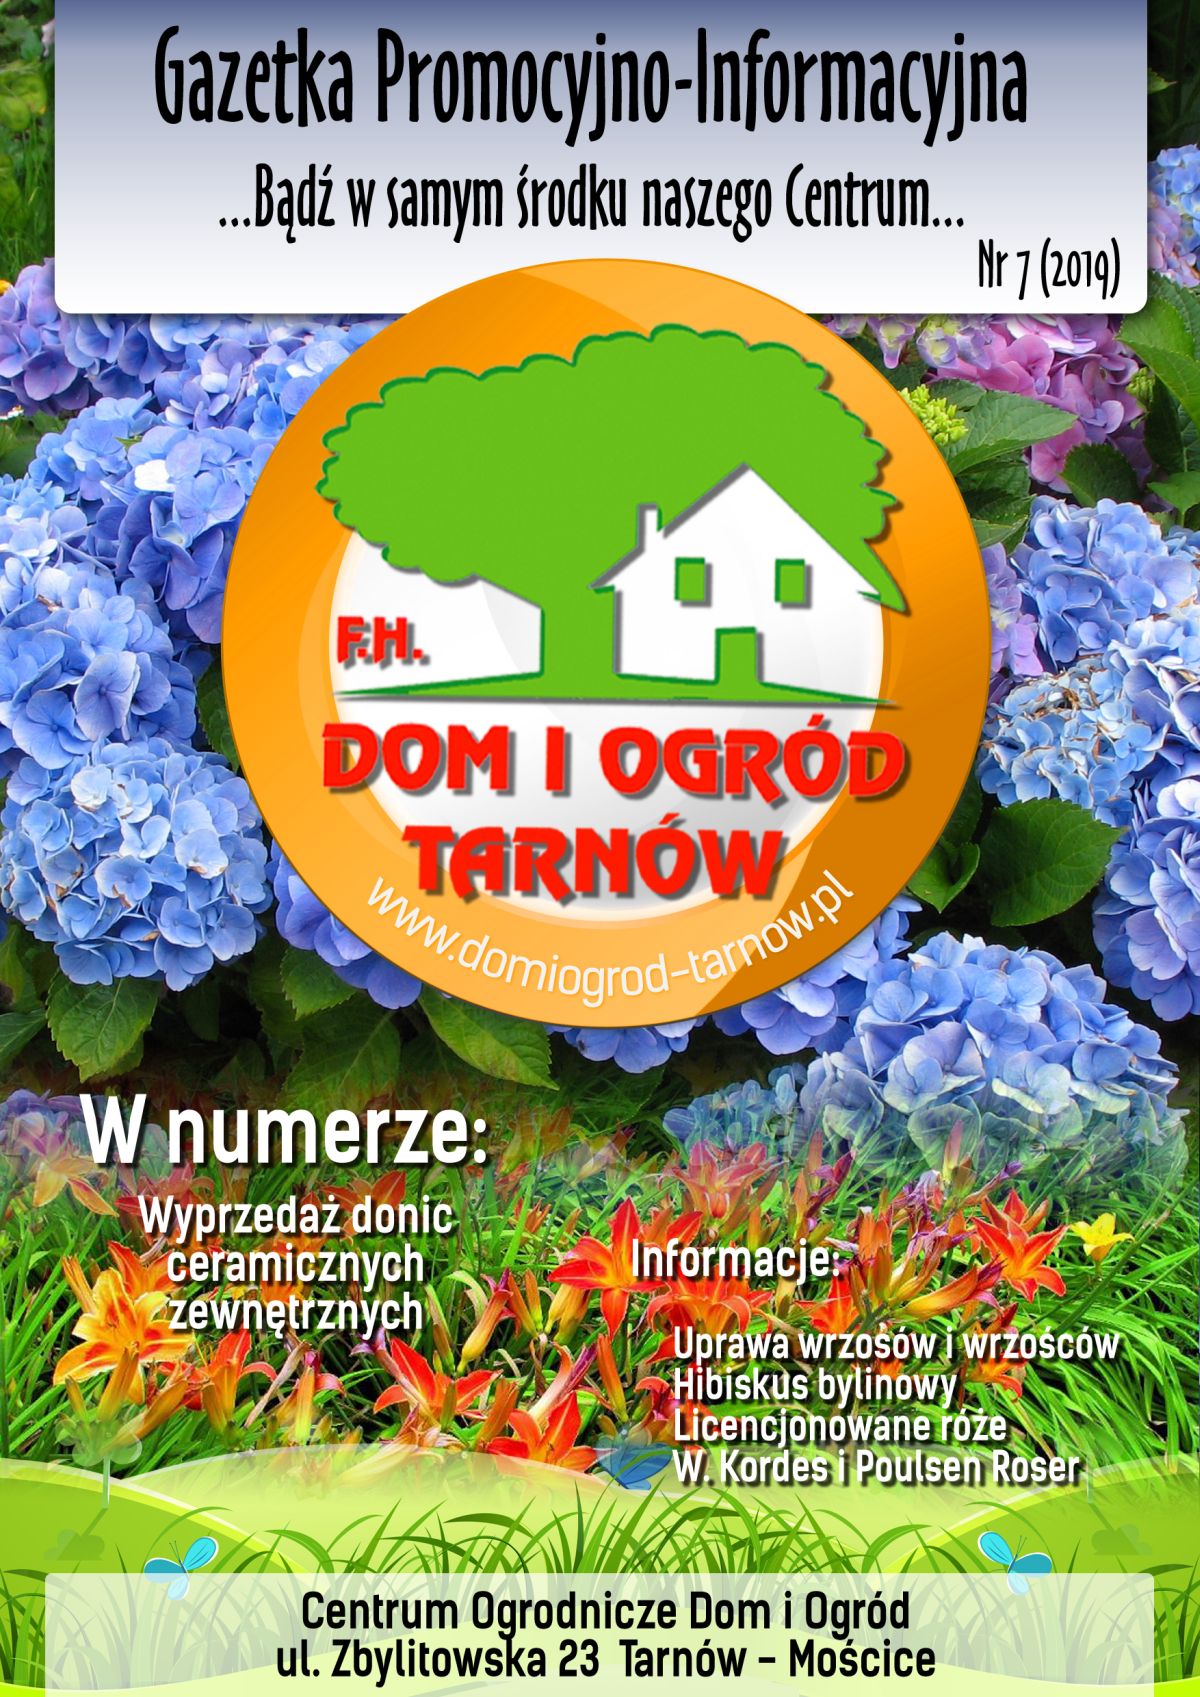 Gazetka Promocyjno-Informacyjna - 07/2019